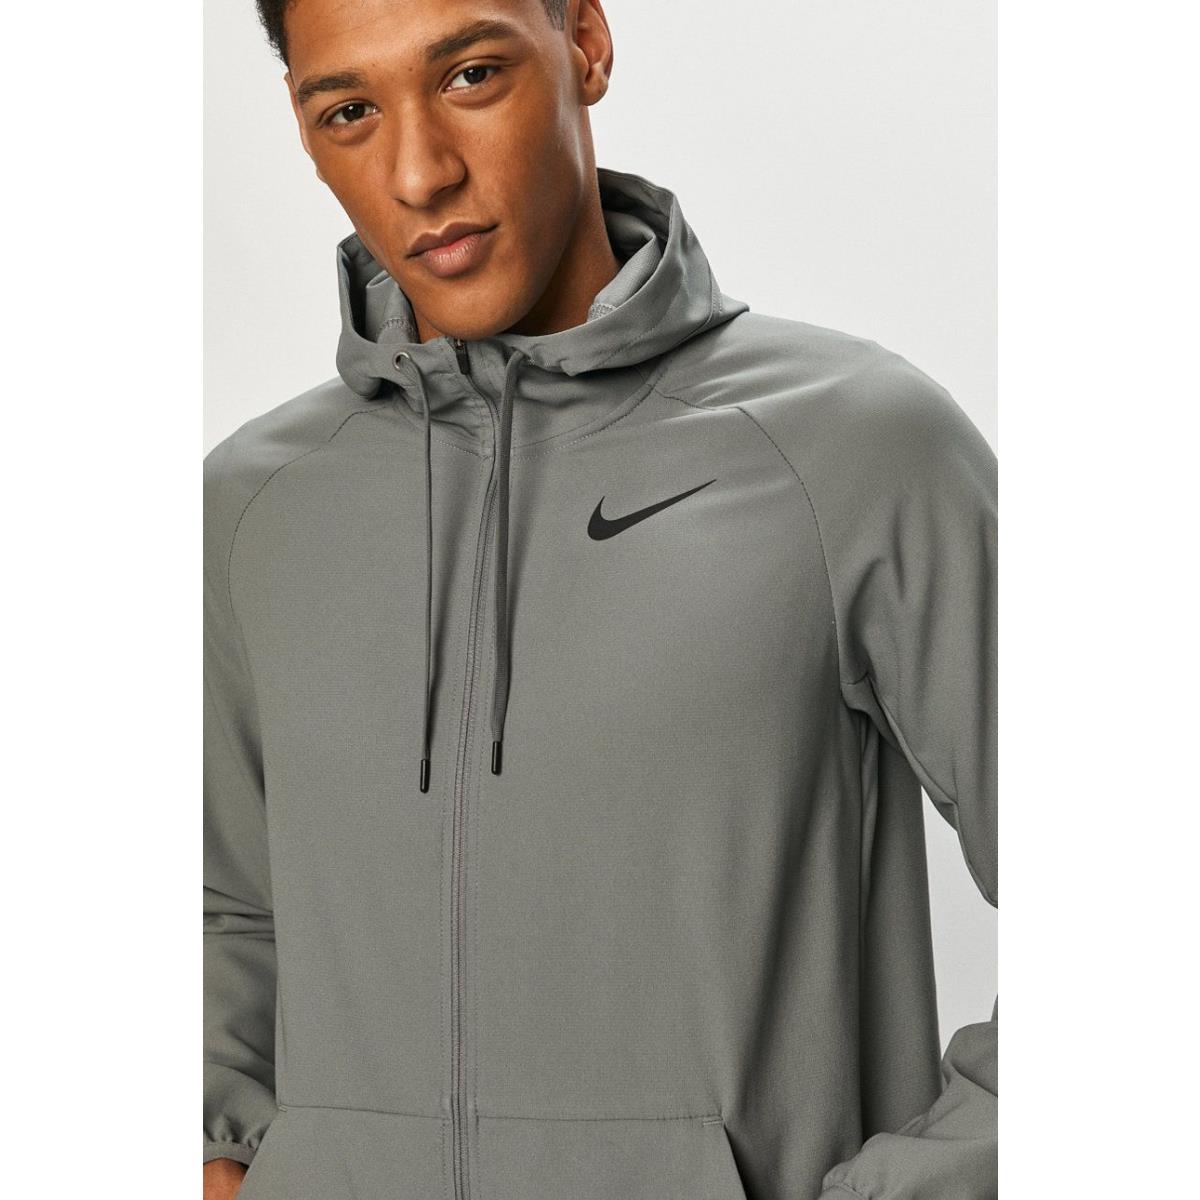 Nike Men`s Flex Full Zip Training Jacket in Grey Medium